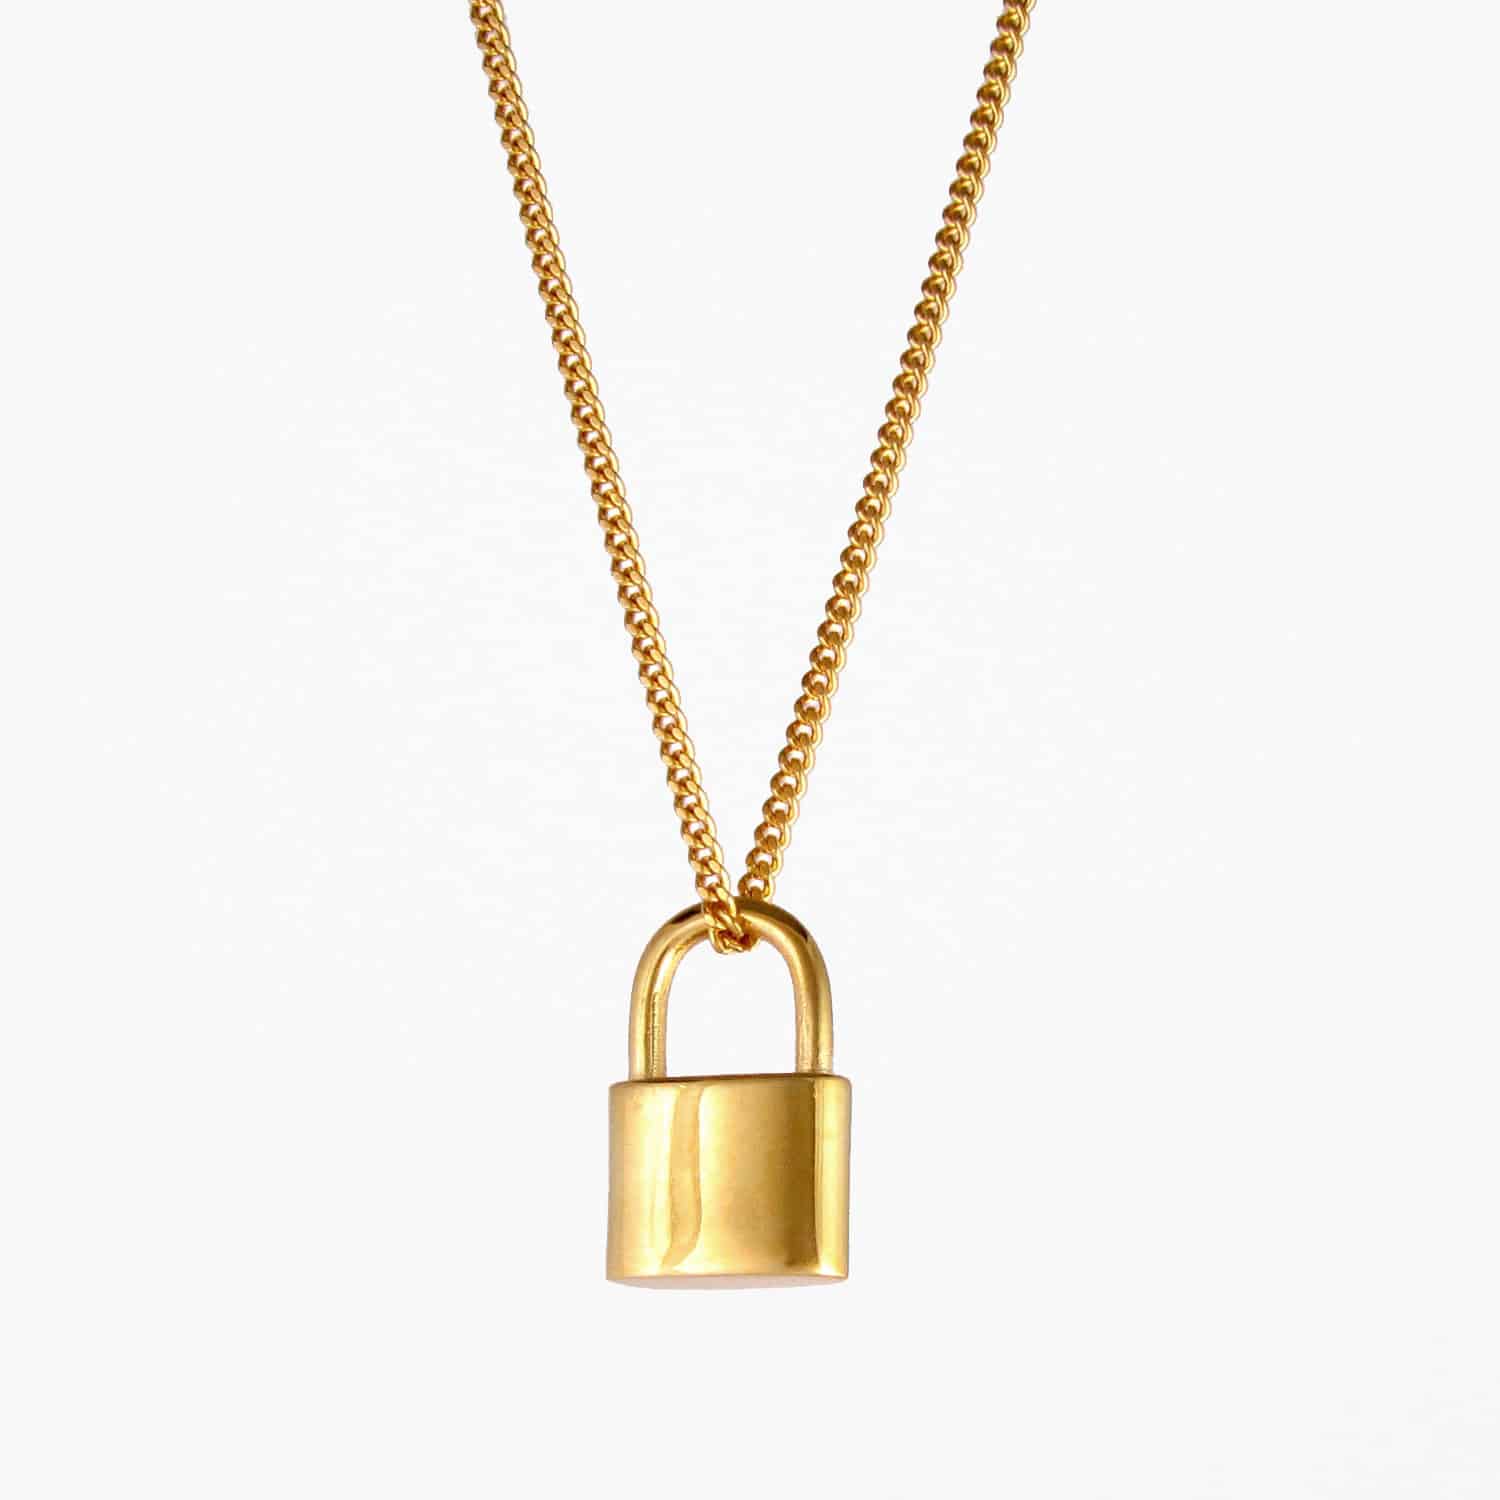 Share 137+ gold padlock necklace best - songngunhatanh.edu.vn